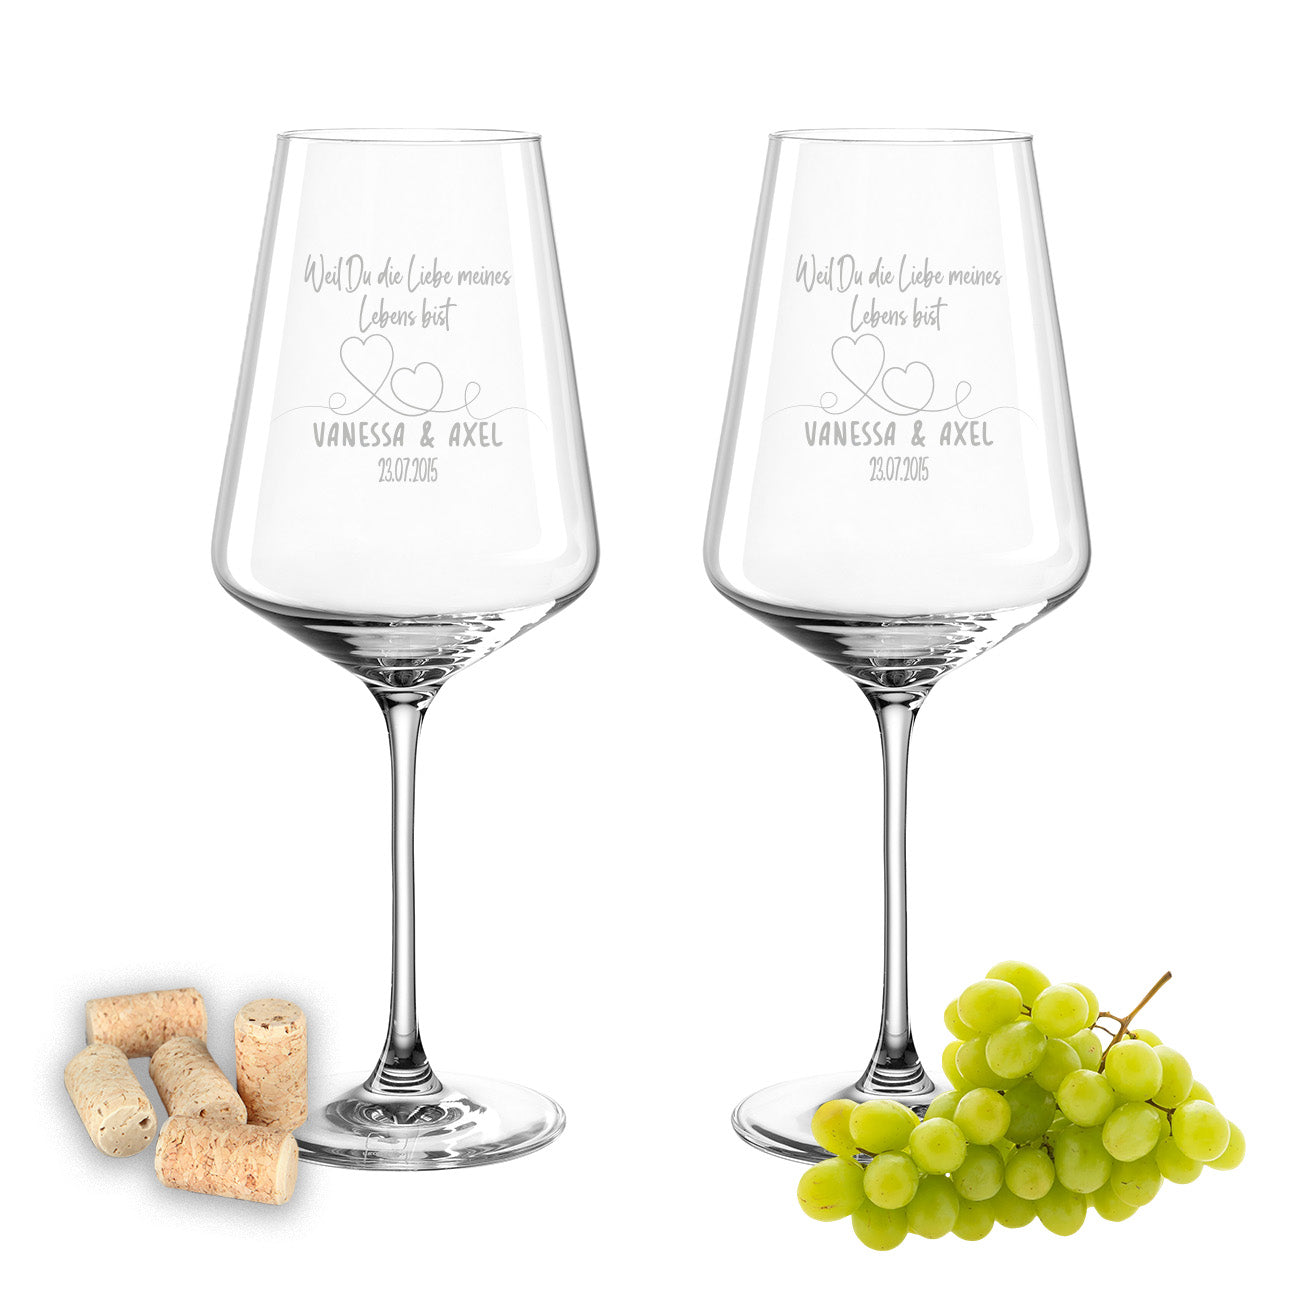 Weinglas mit Gravur Leonardo Puccini "WEIL DU DIE LIEBE MEINES LEBENS BIST" 2 Gläser mit Wunschname & Datum